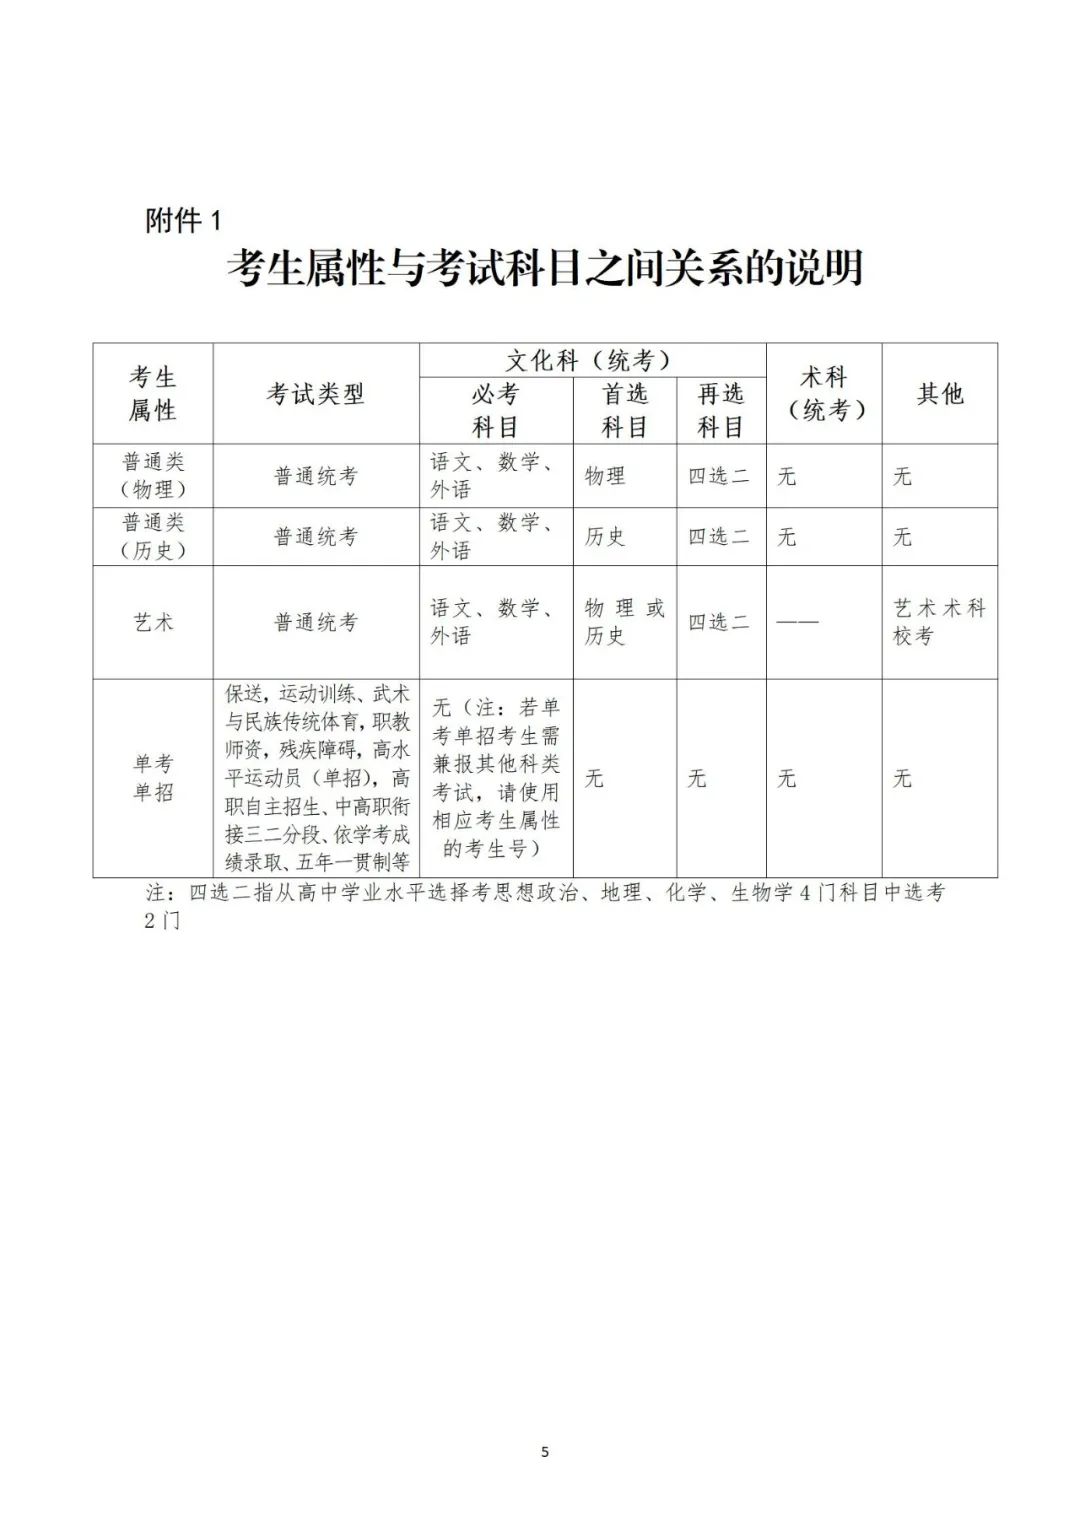 注意！广东省2022年普通高考补报名2月21日开始